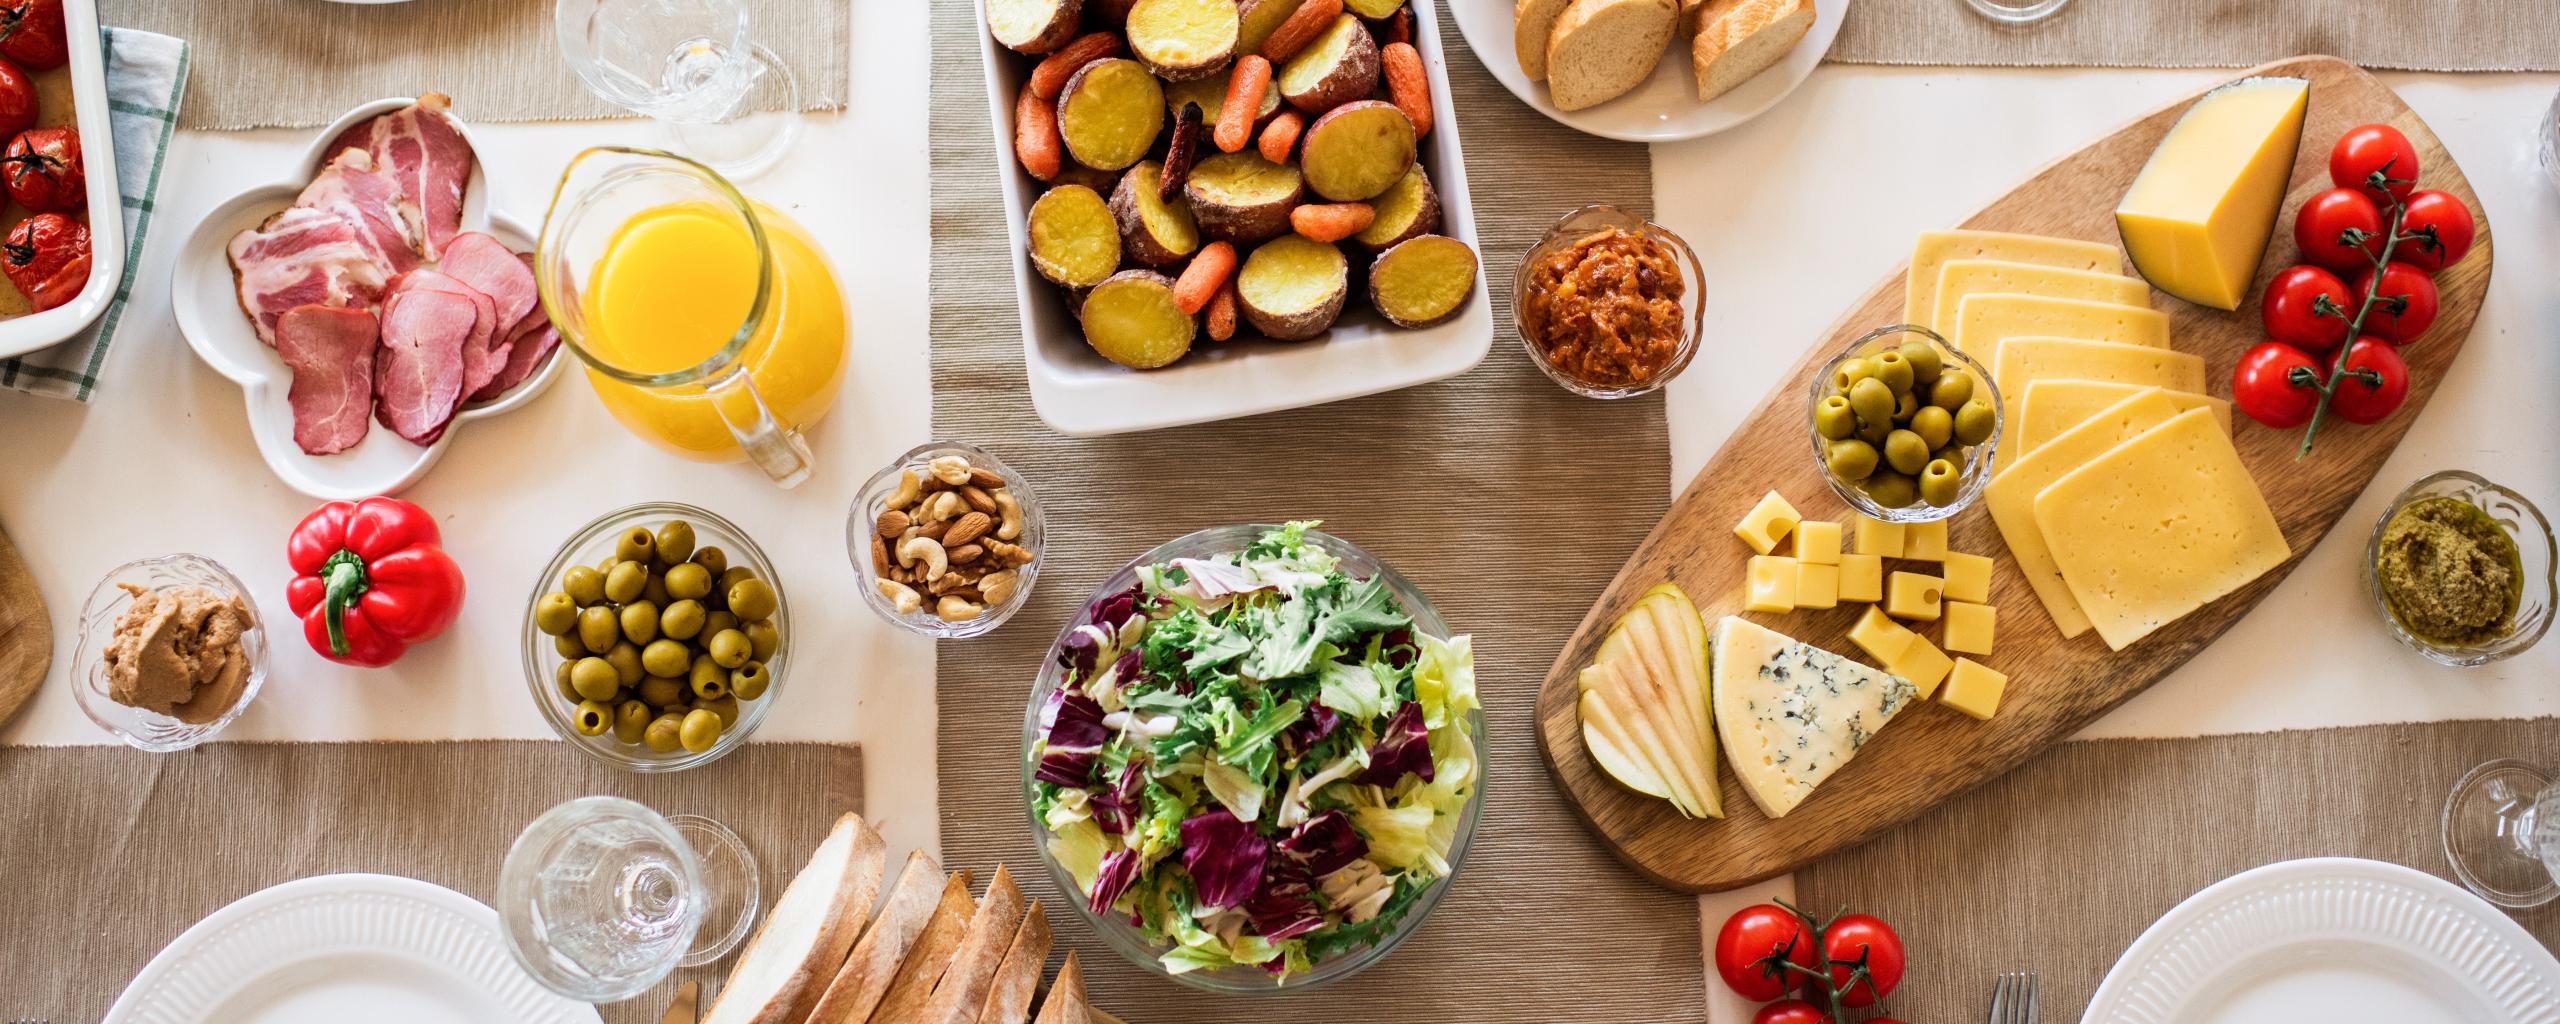 Bovenaanzicht van een gedekte tafel met onder andere een kaasplank, ovenschotel, diverse soorten vlees en olijven.